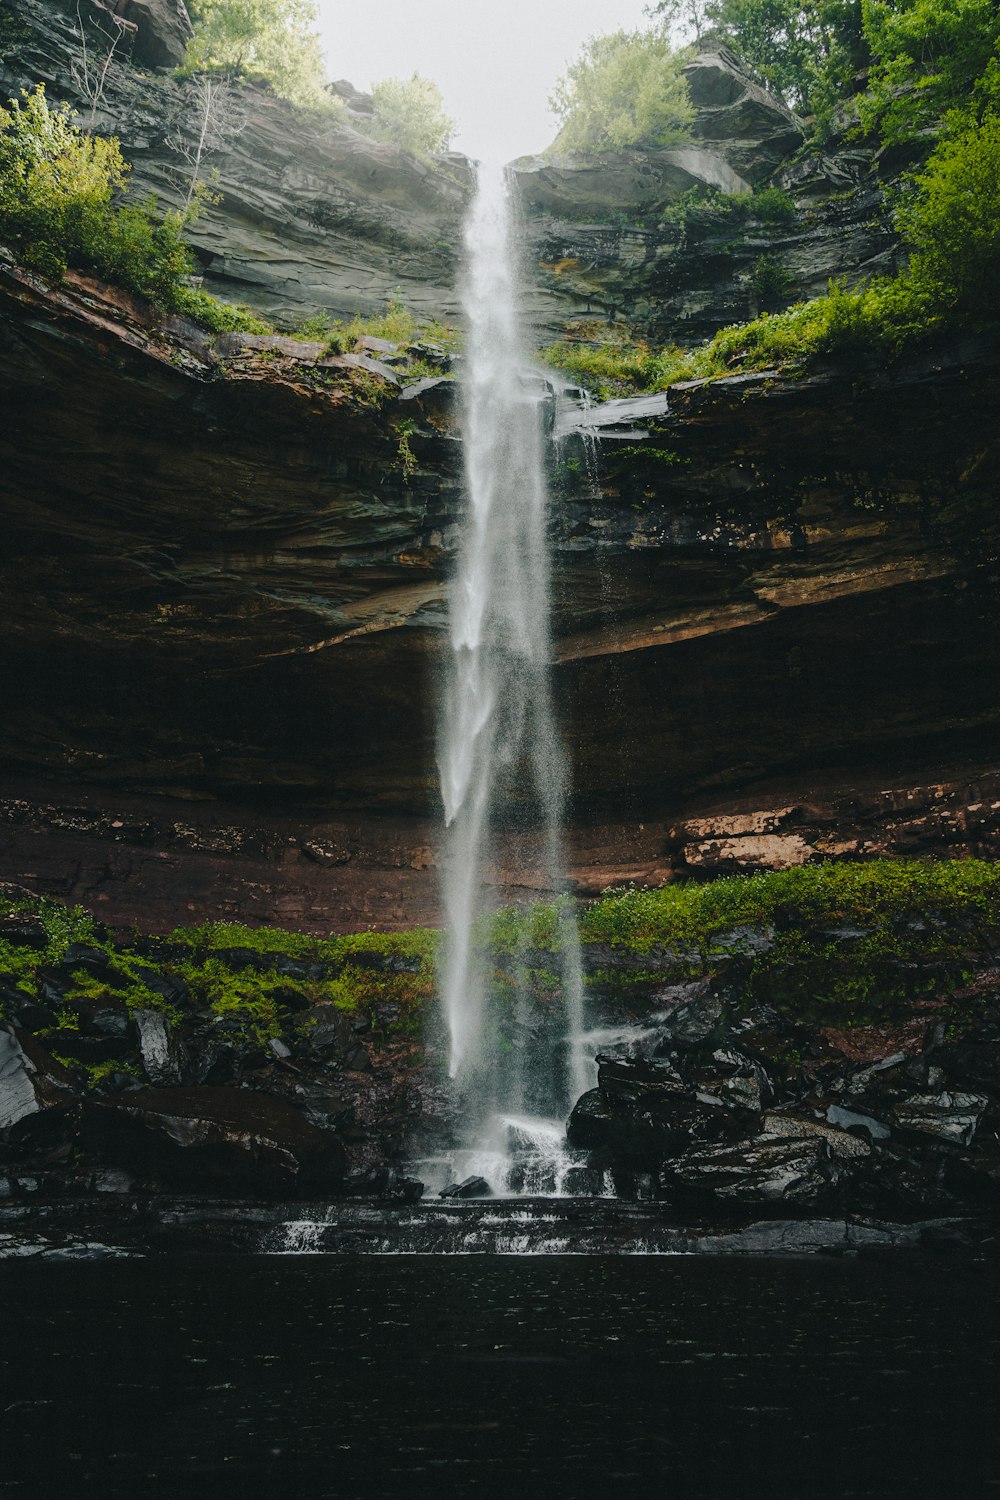 Una grande cascata si trova nel mezzo di una foresta